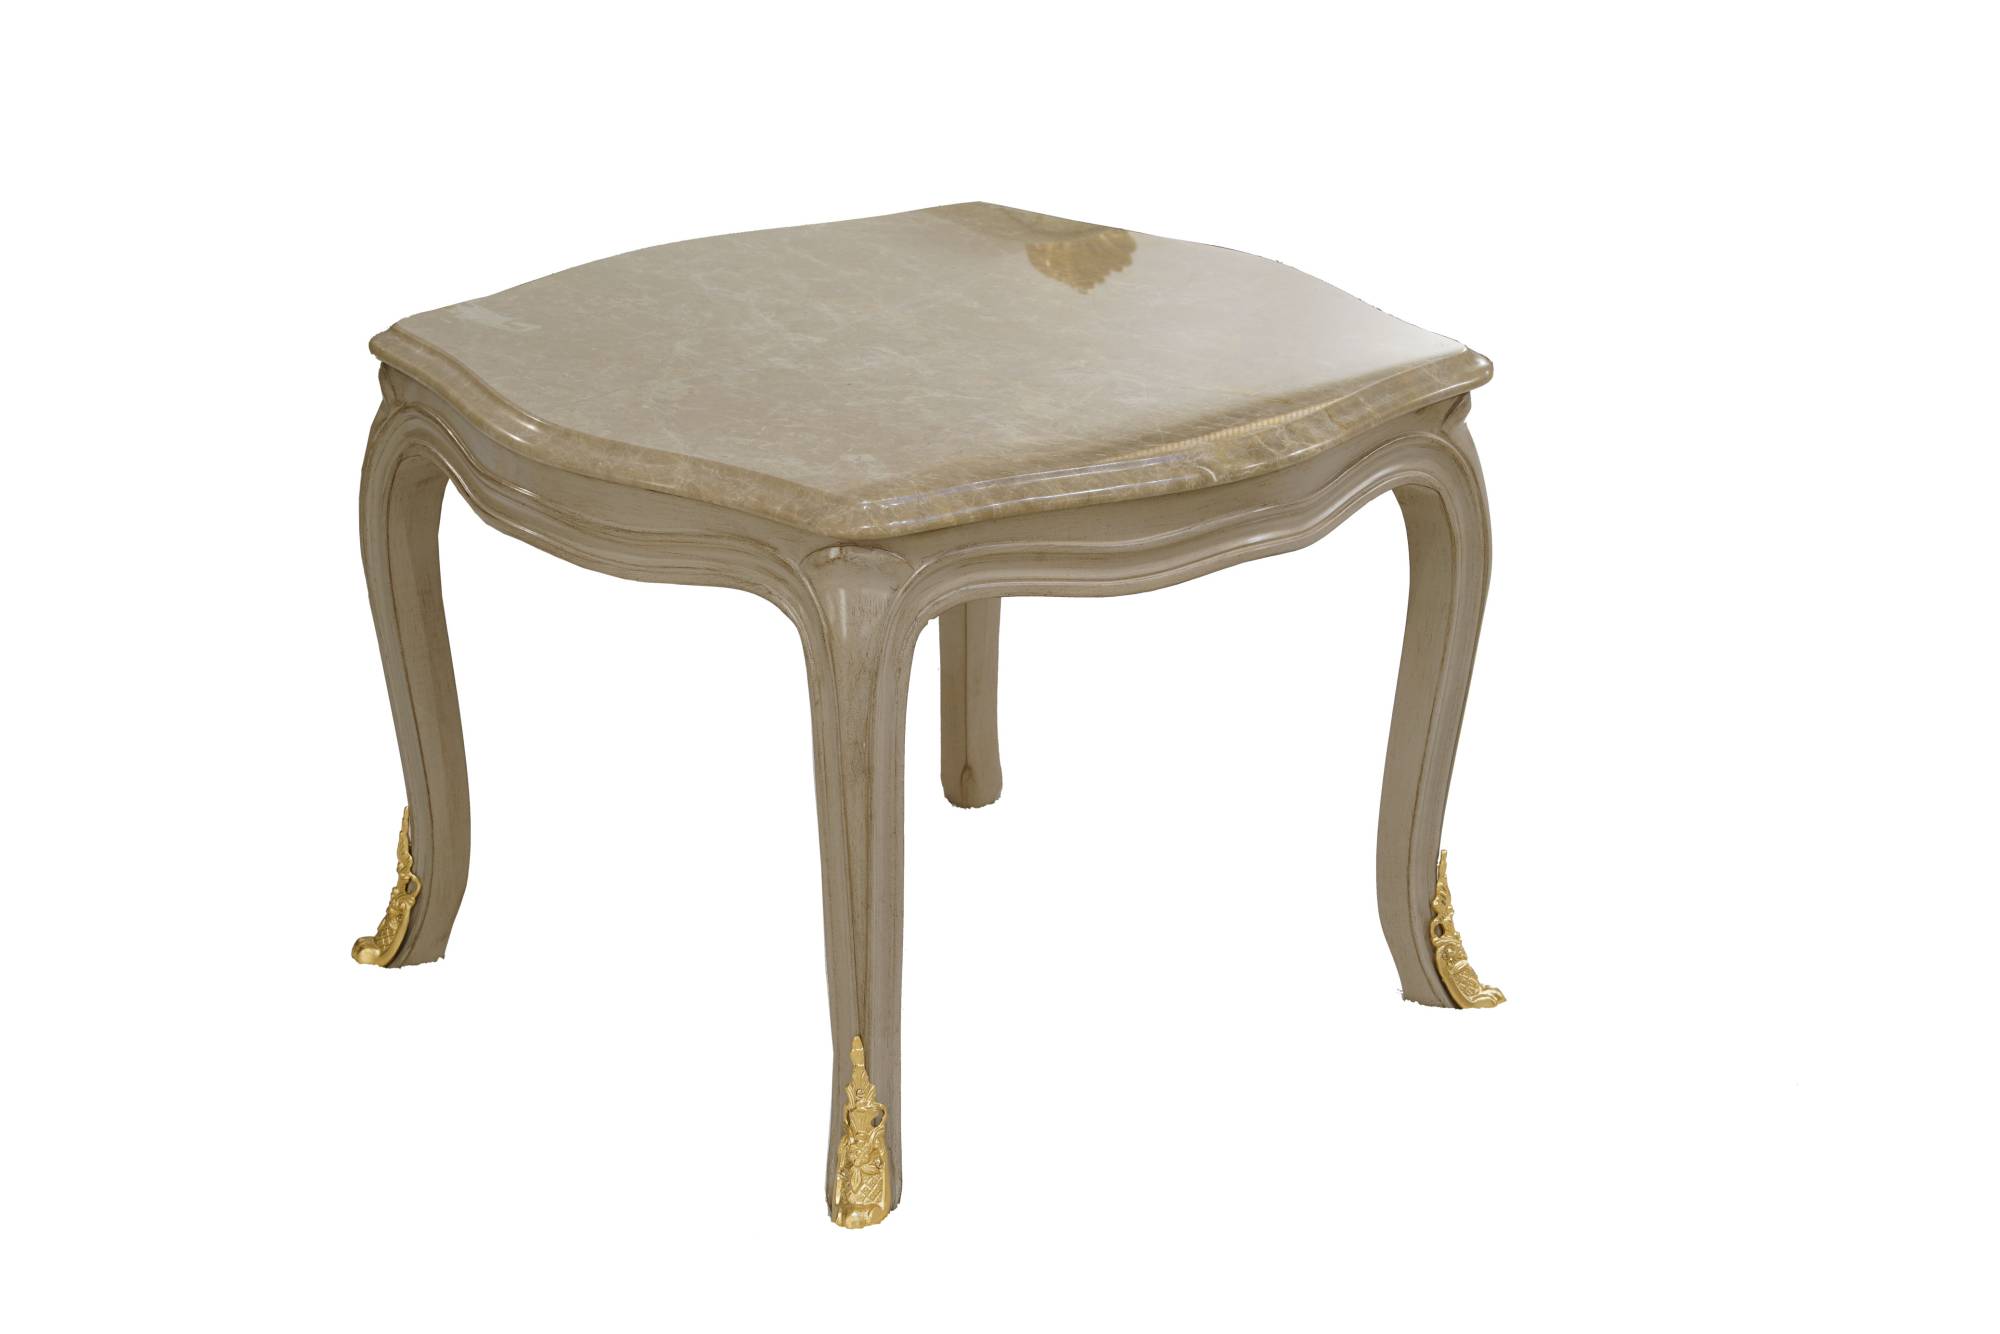 ART. 2202 – C.G. Capelletti Italian Luxury Classic Small tables. Made in Italy classic interior design